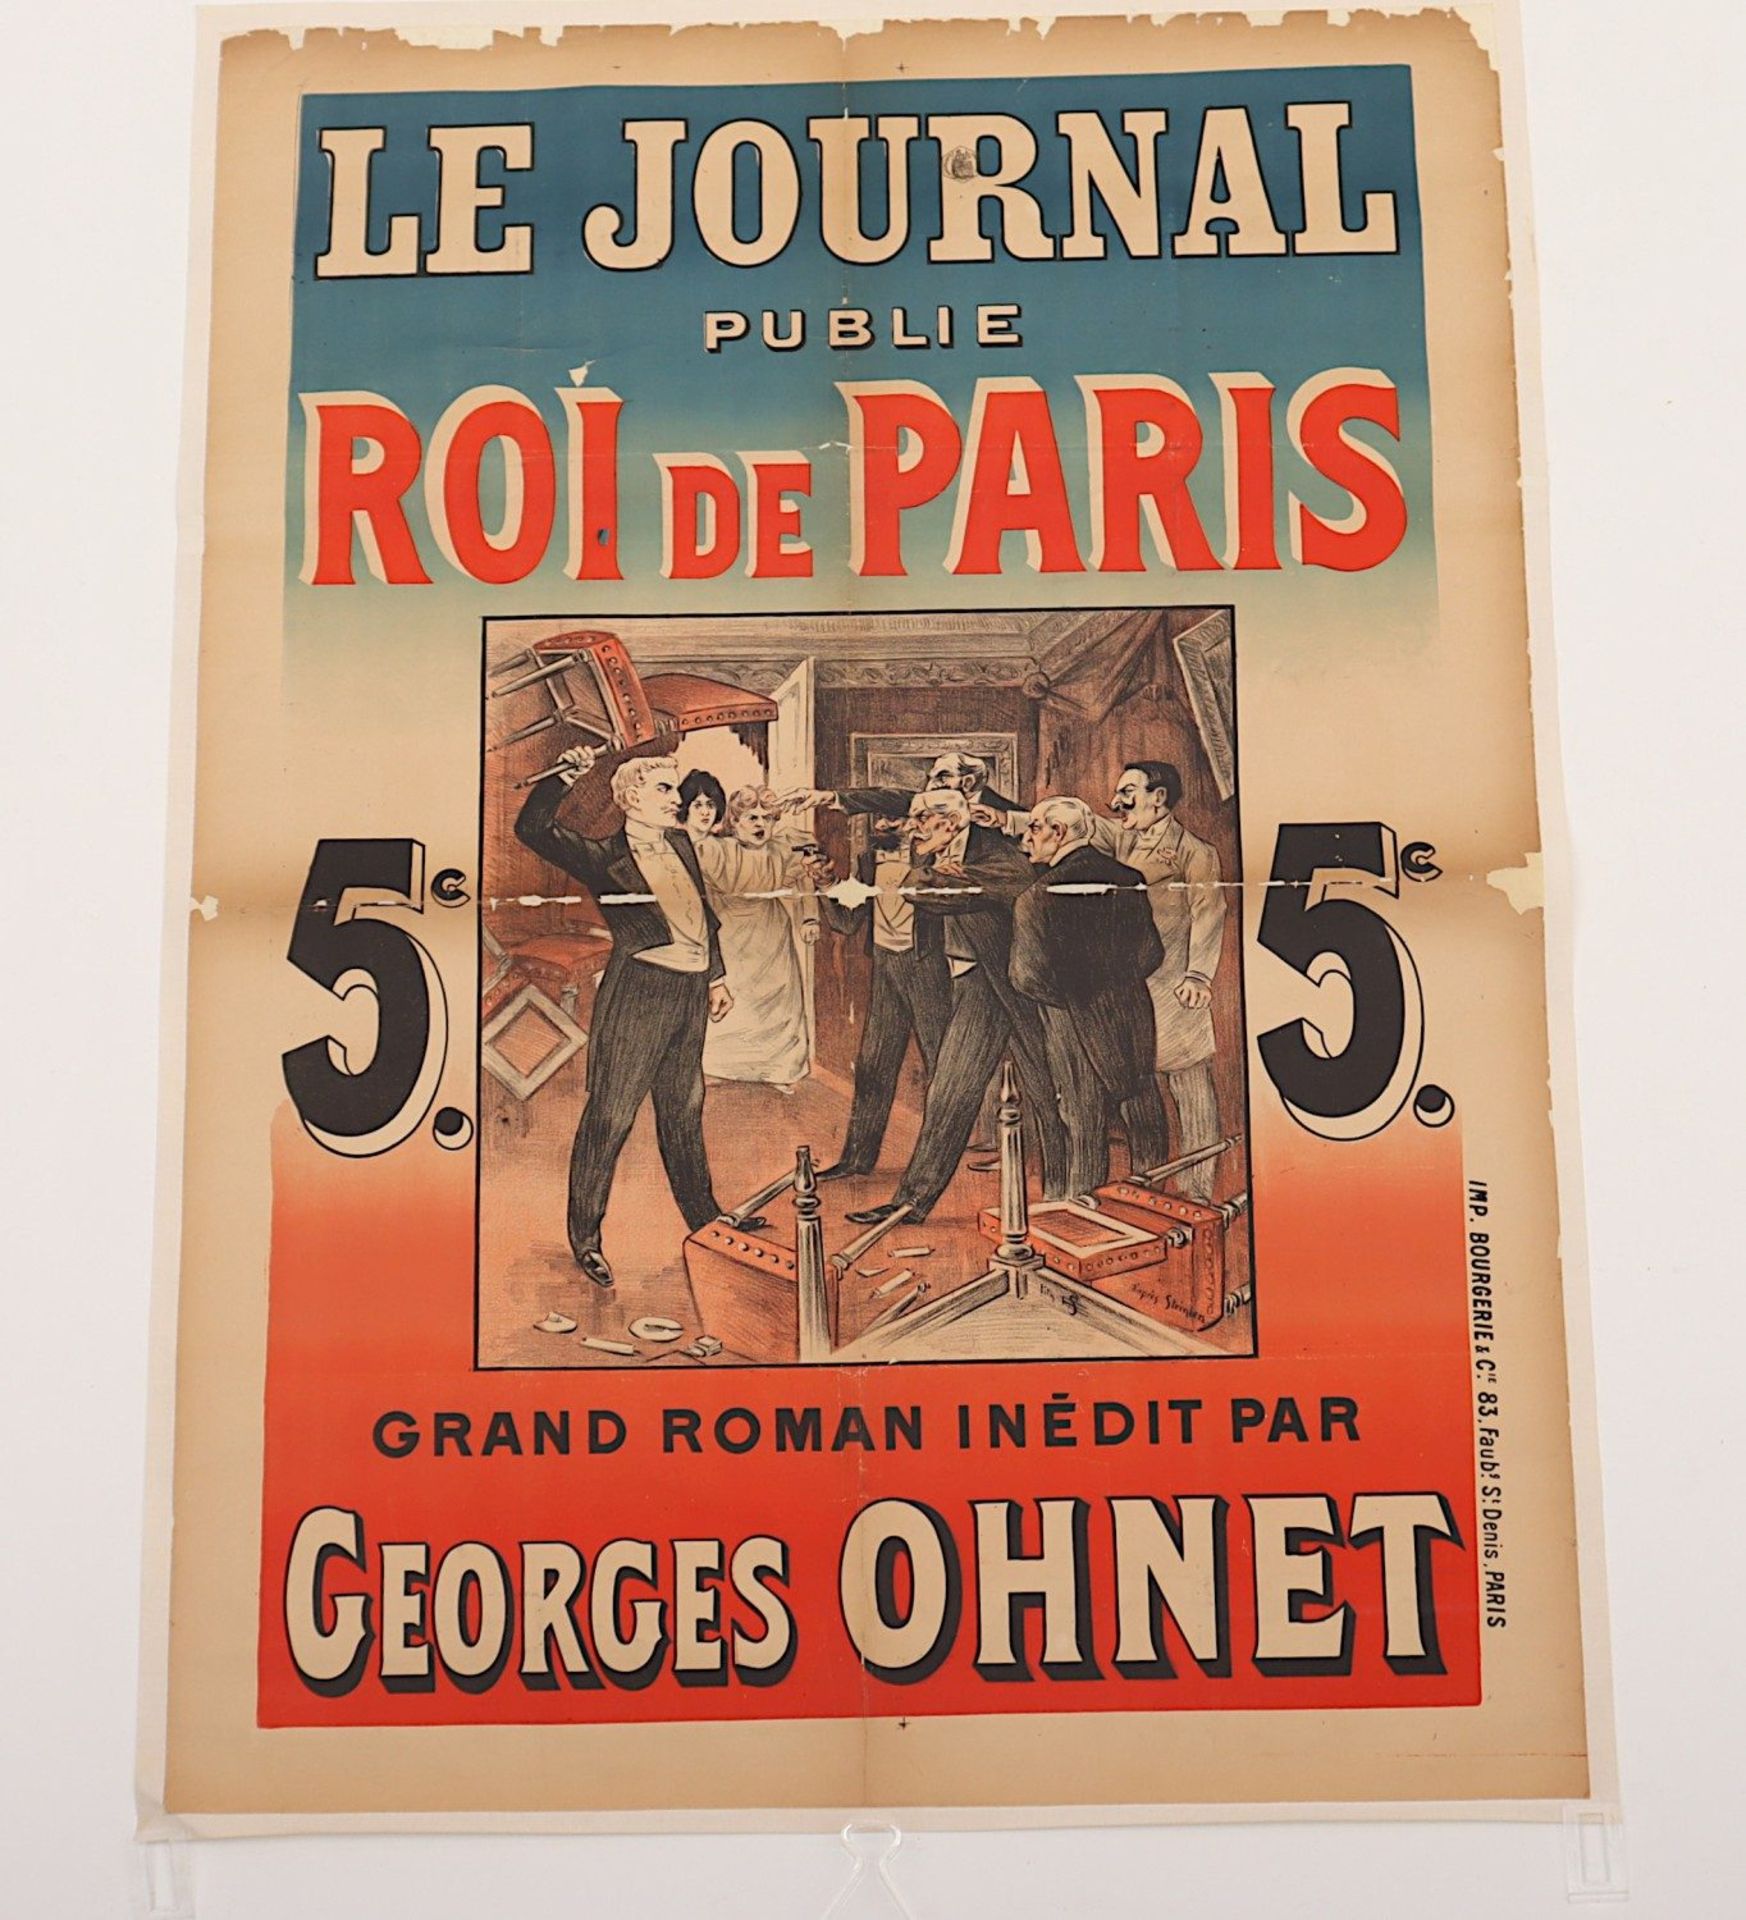 PLAKAT, "Le Journal publié roi de Paris", (1898), Farblithographie, auf Leinen aufgezogen. Imp.